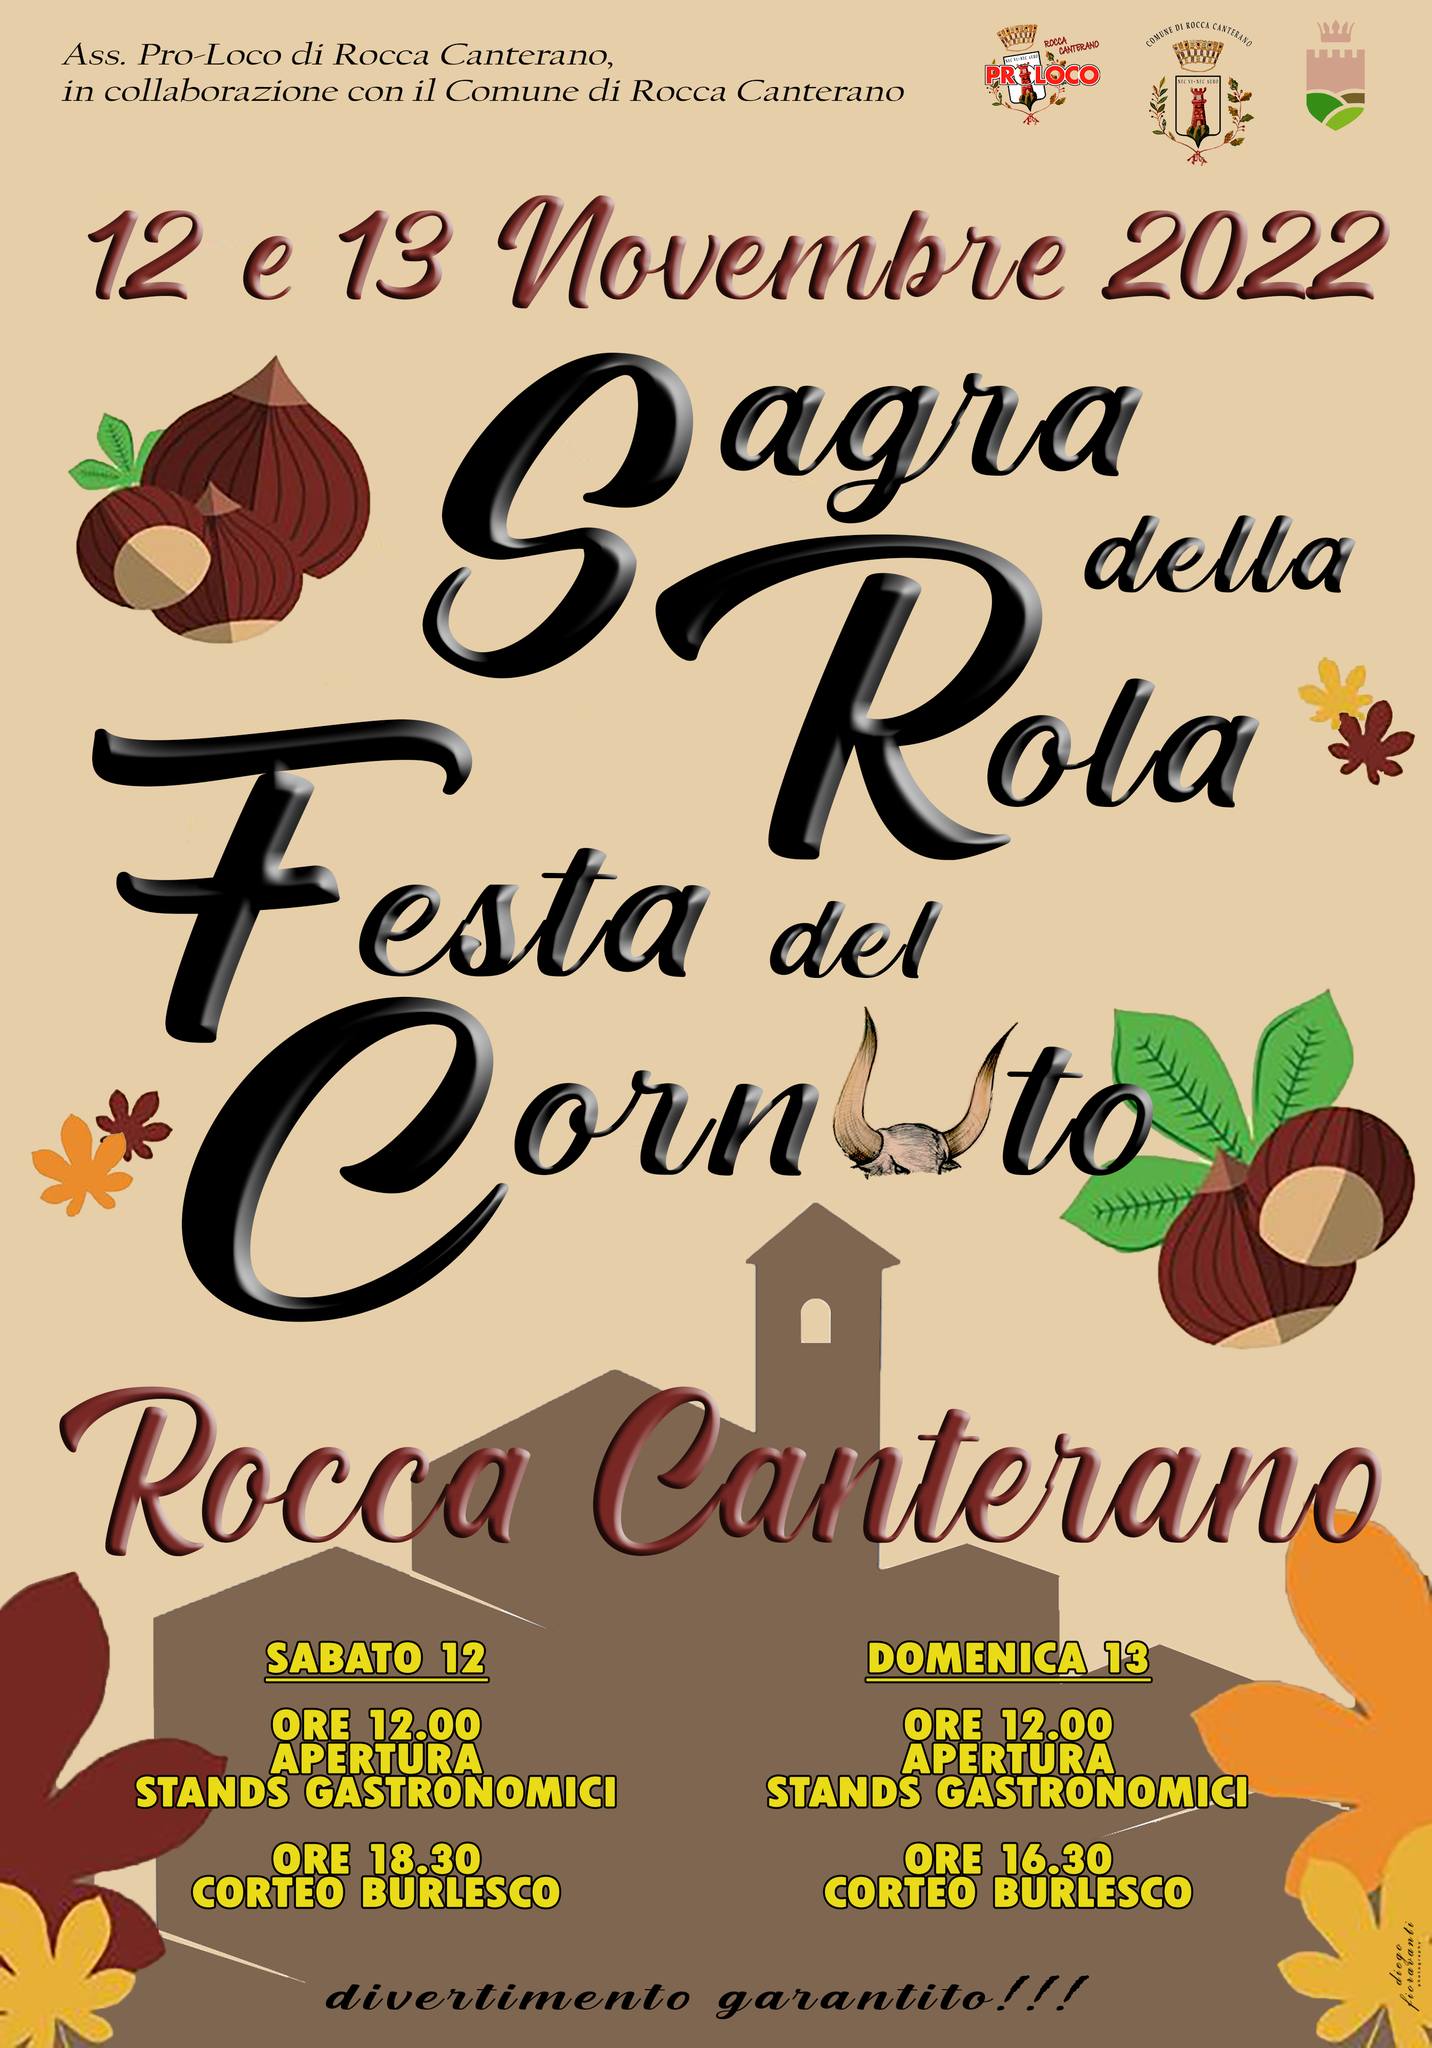 https://www.lacicala.org/immagini_news/20-10-2022/sagra-della-rola--festa-del-cornuto-1213-novembre-2022-a-rocca-canterano-.jpg